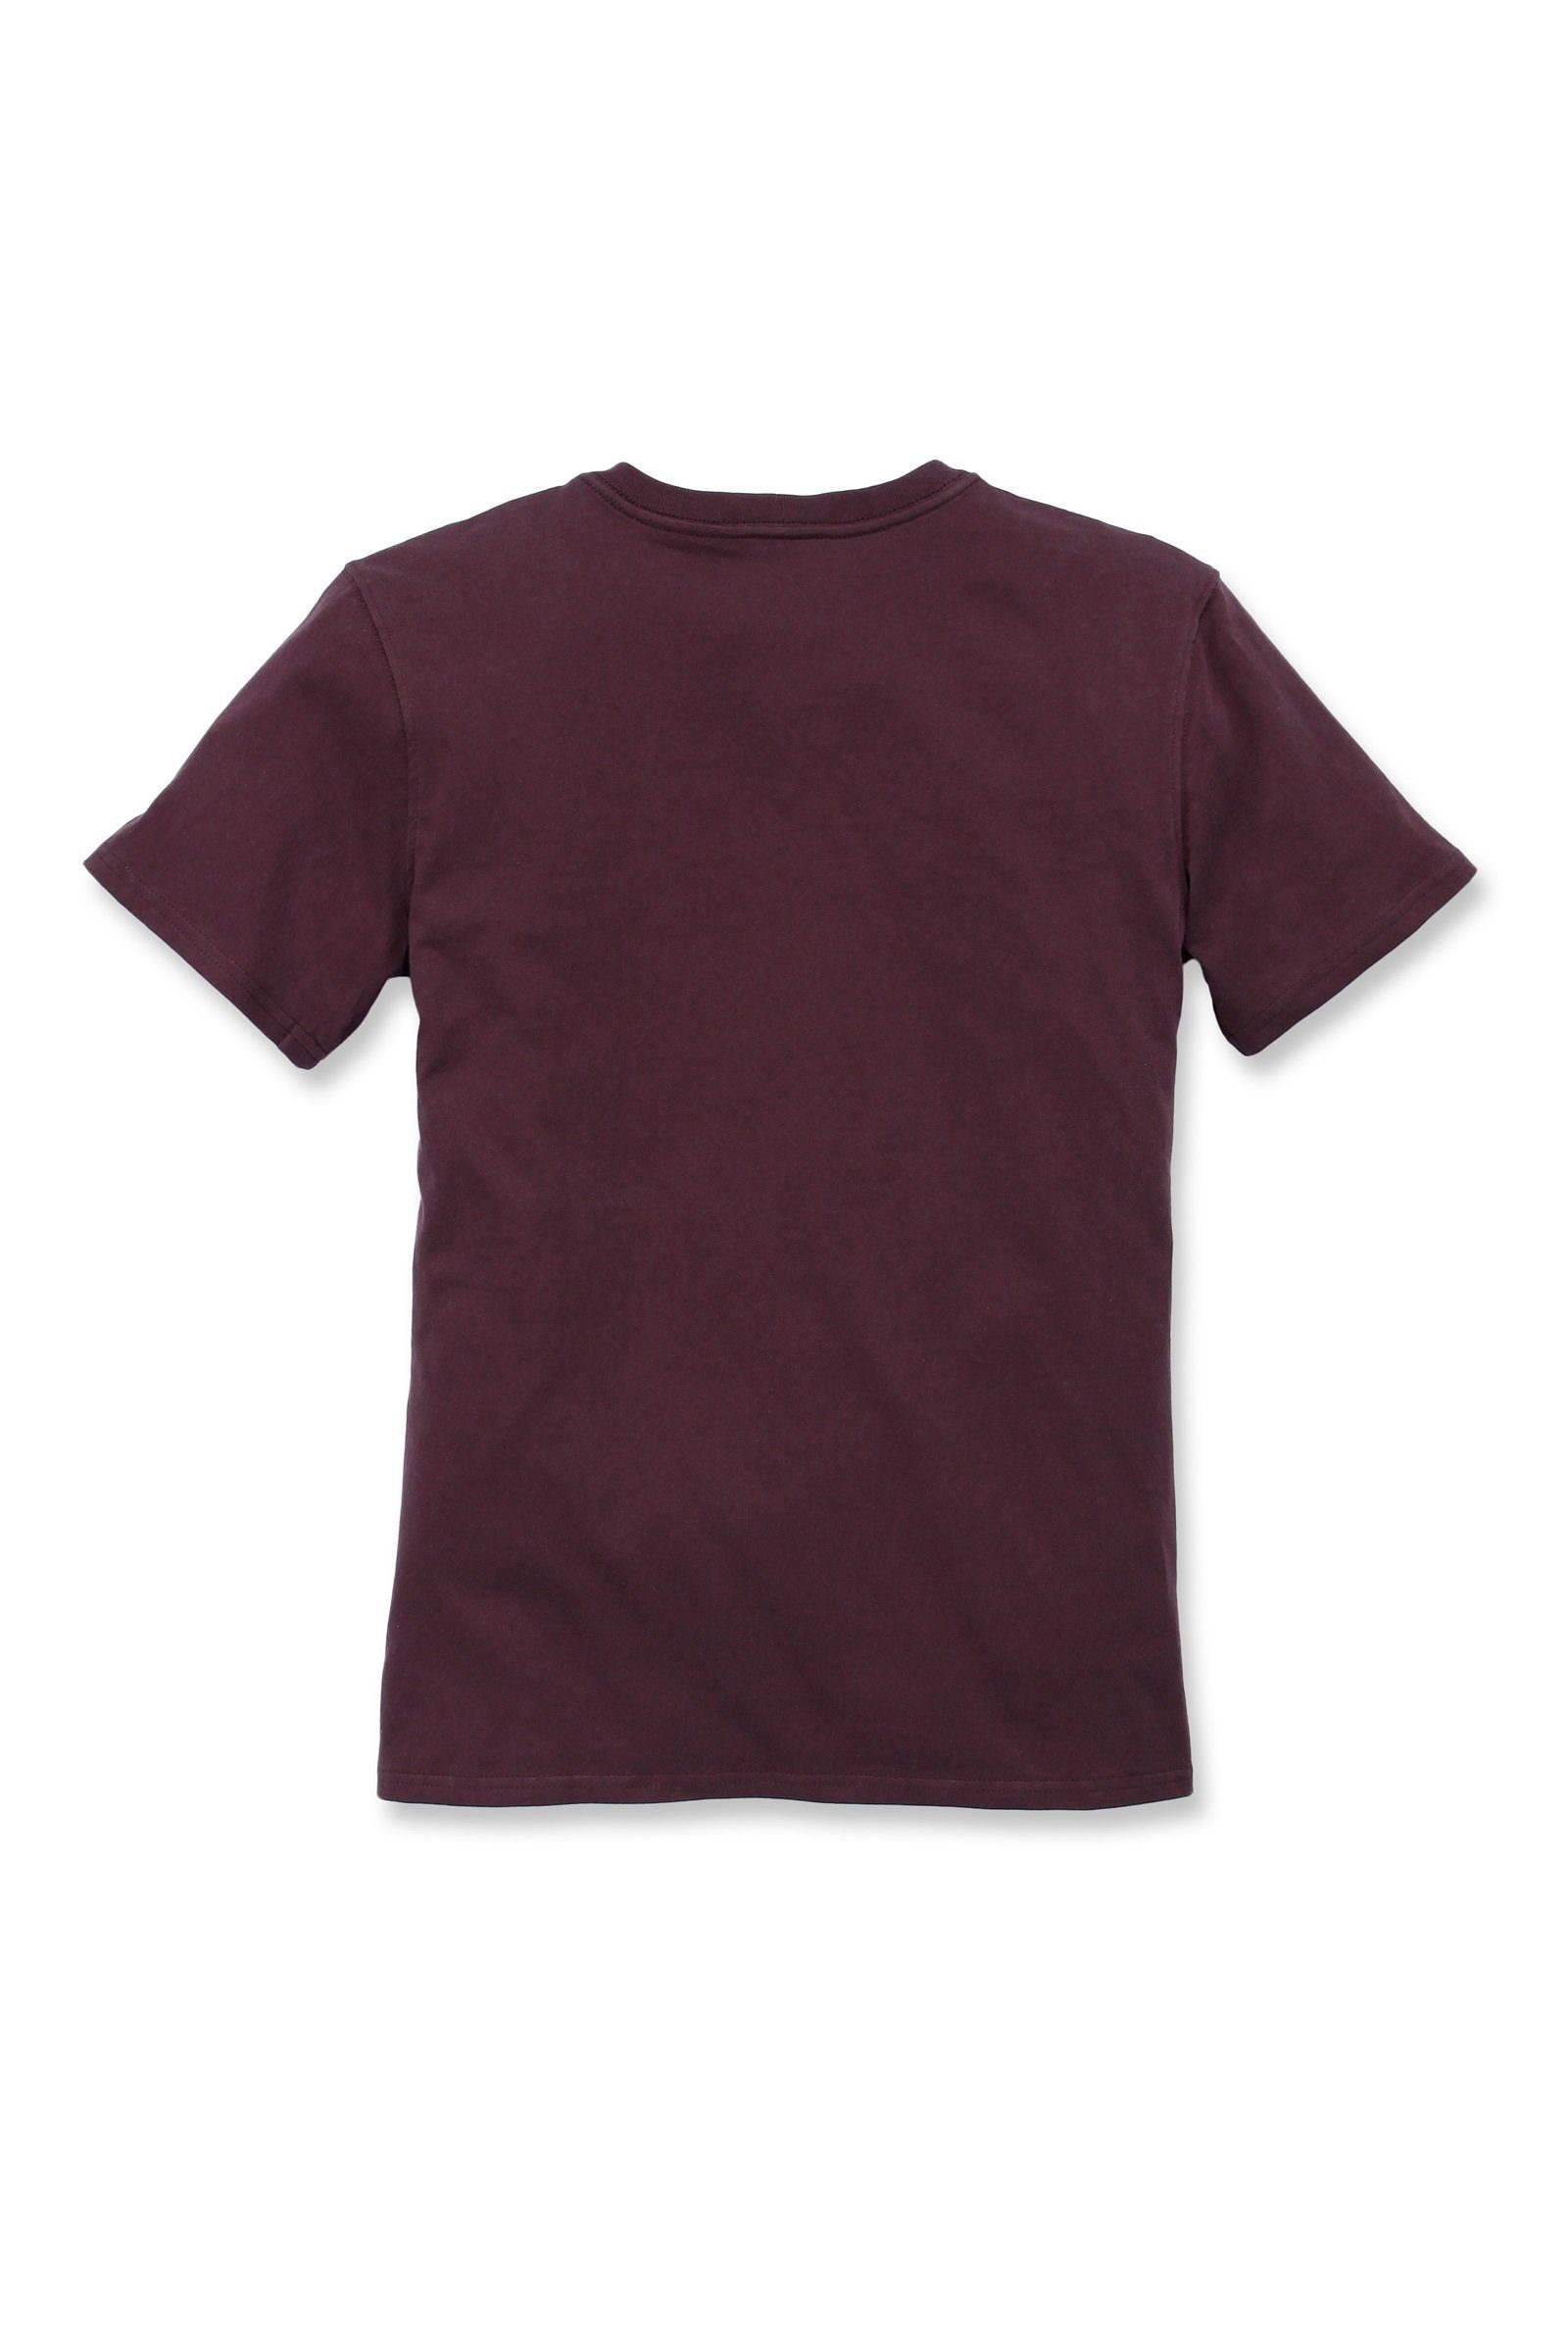 Short-Sleeve Heavyweight Fit Pocket Adult wine T-Shirt Damen Loose T-Shirt Carhartt deep Carhartt